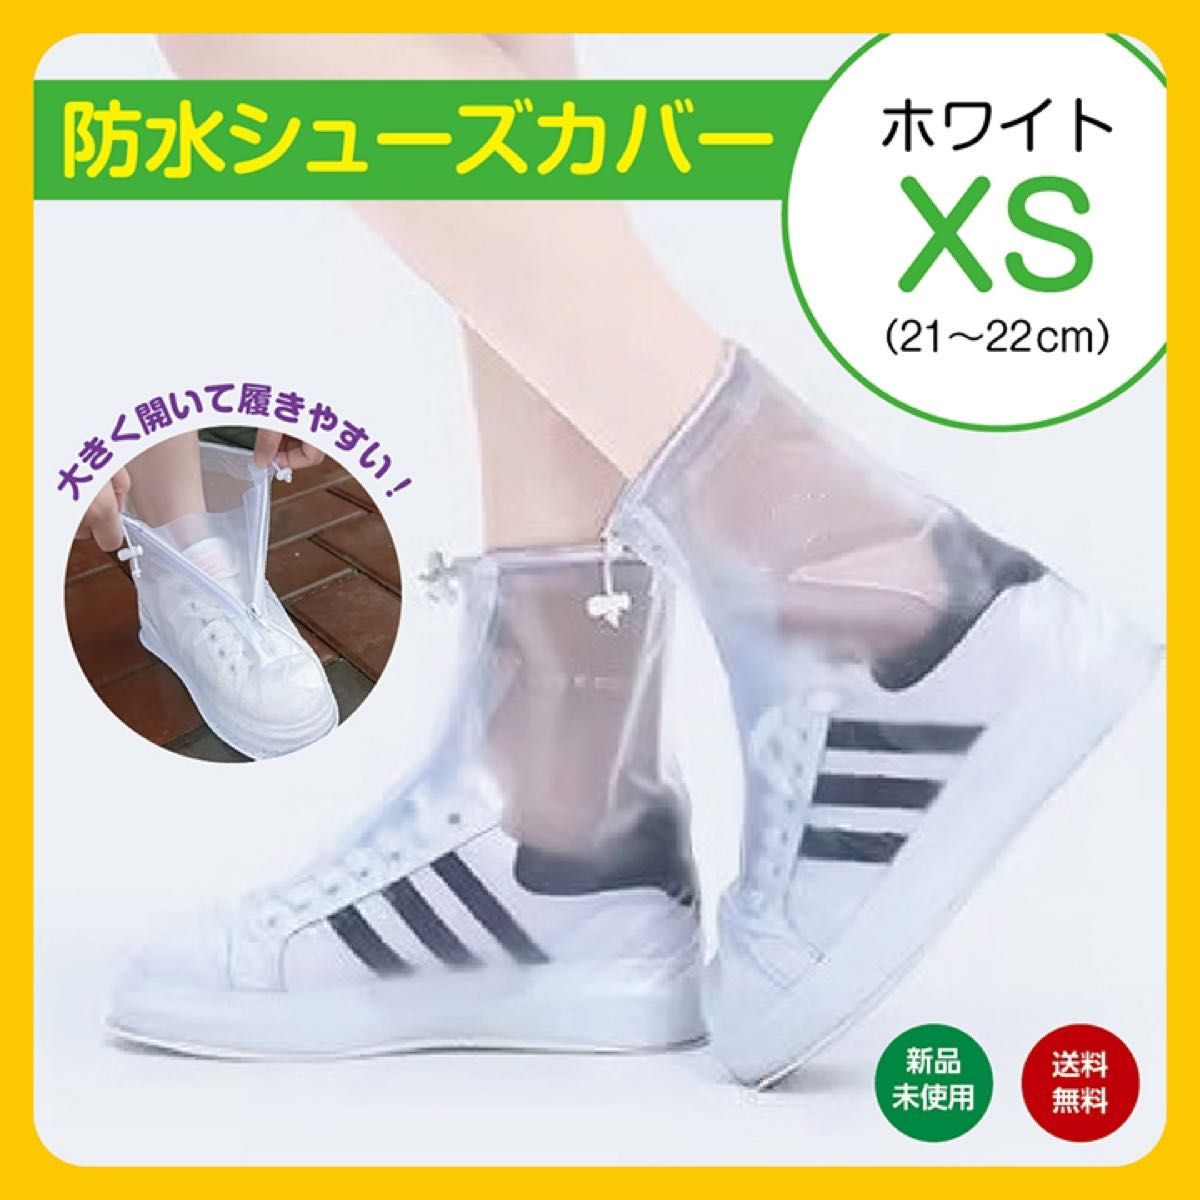 XS クリア ホワイト 白 防水 シューズカバー レインブーツ 長靴 雨具 レディース メンズ 長靴